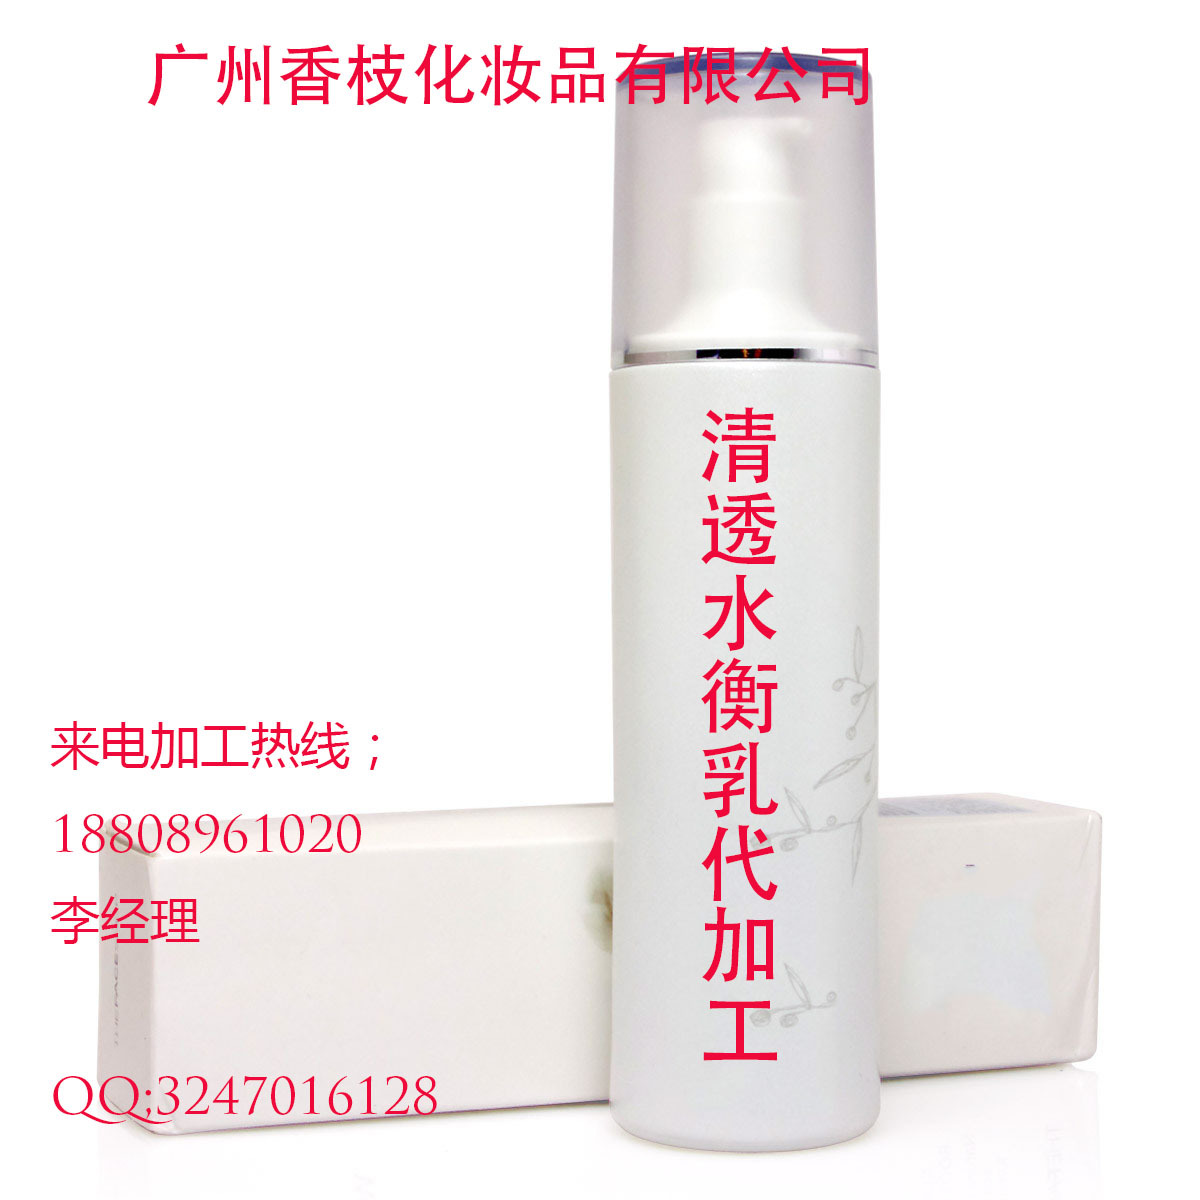 微商新品清透水衡乳加工生产 广州香枝洁面乳生产厂家（图）_1